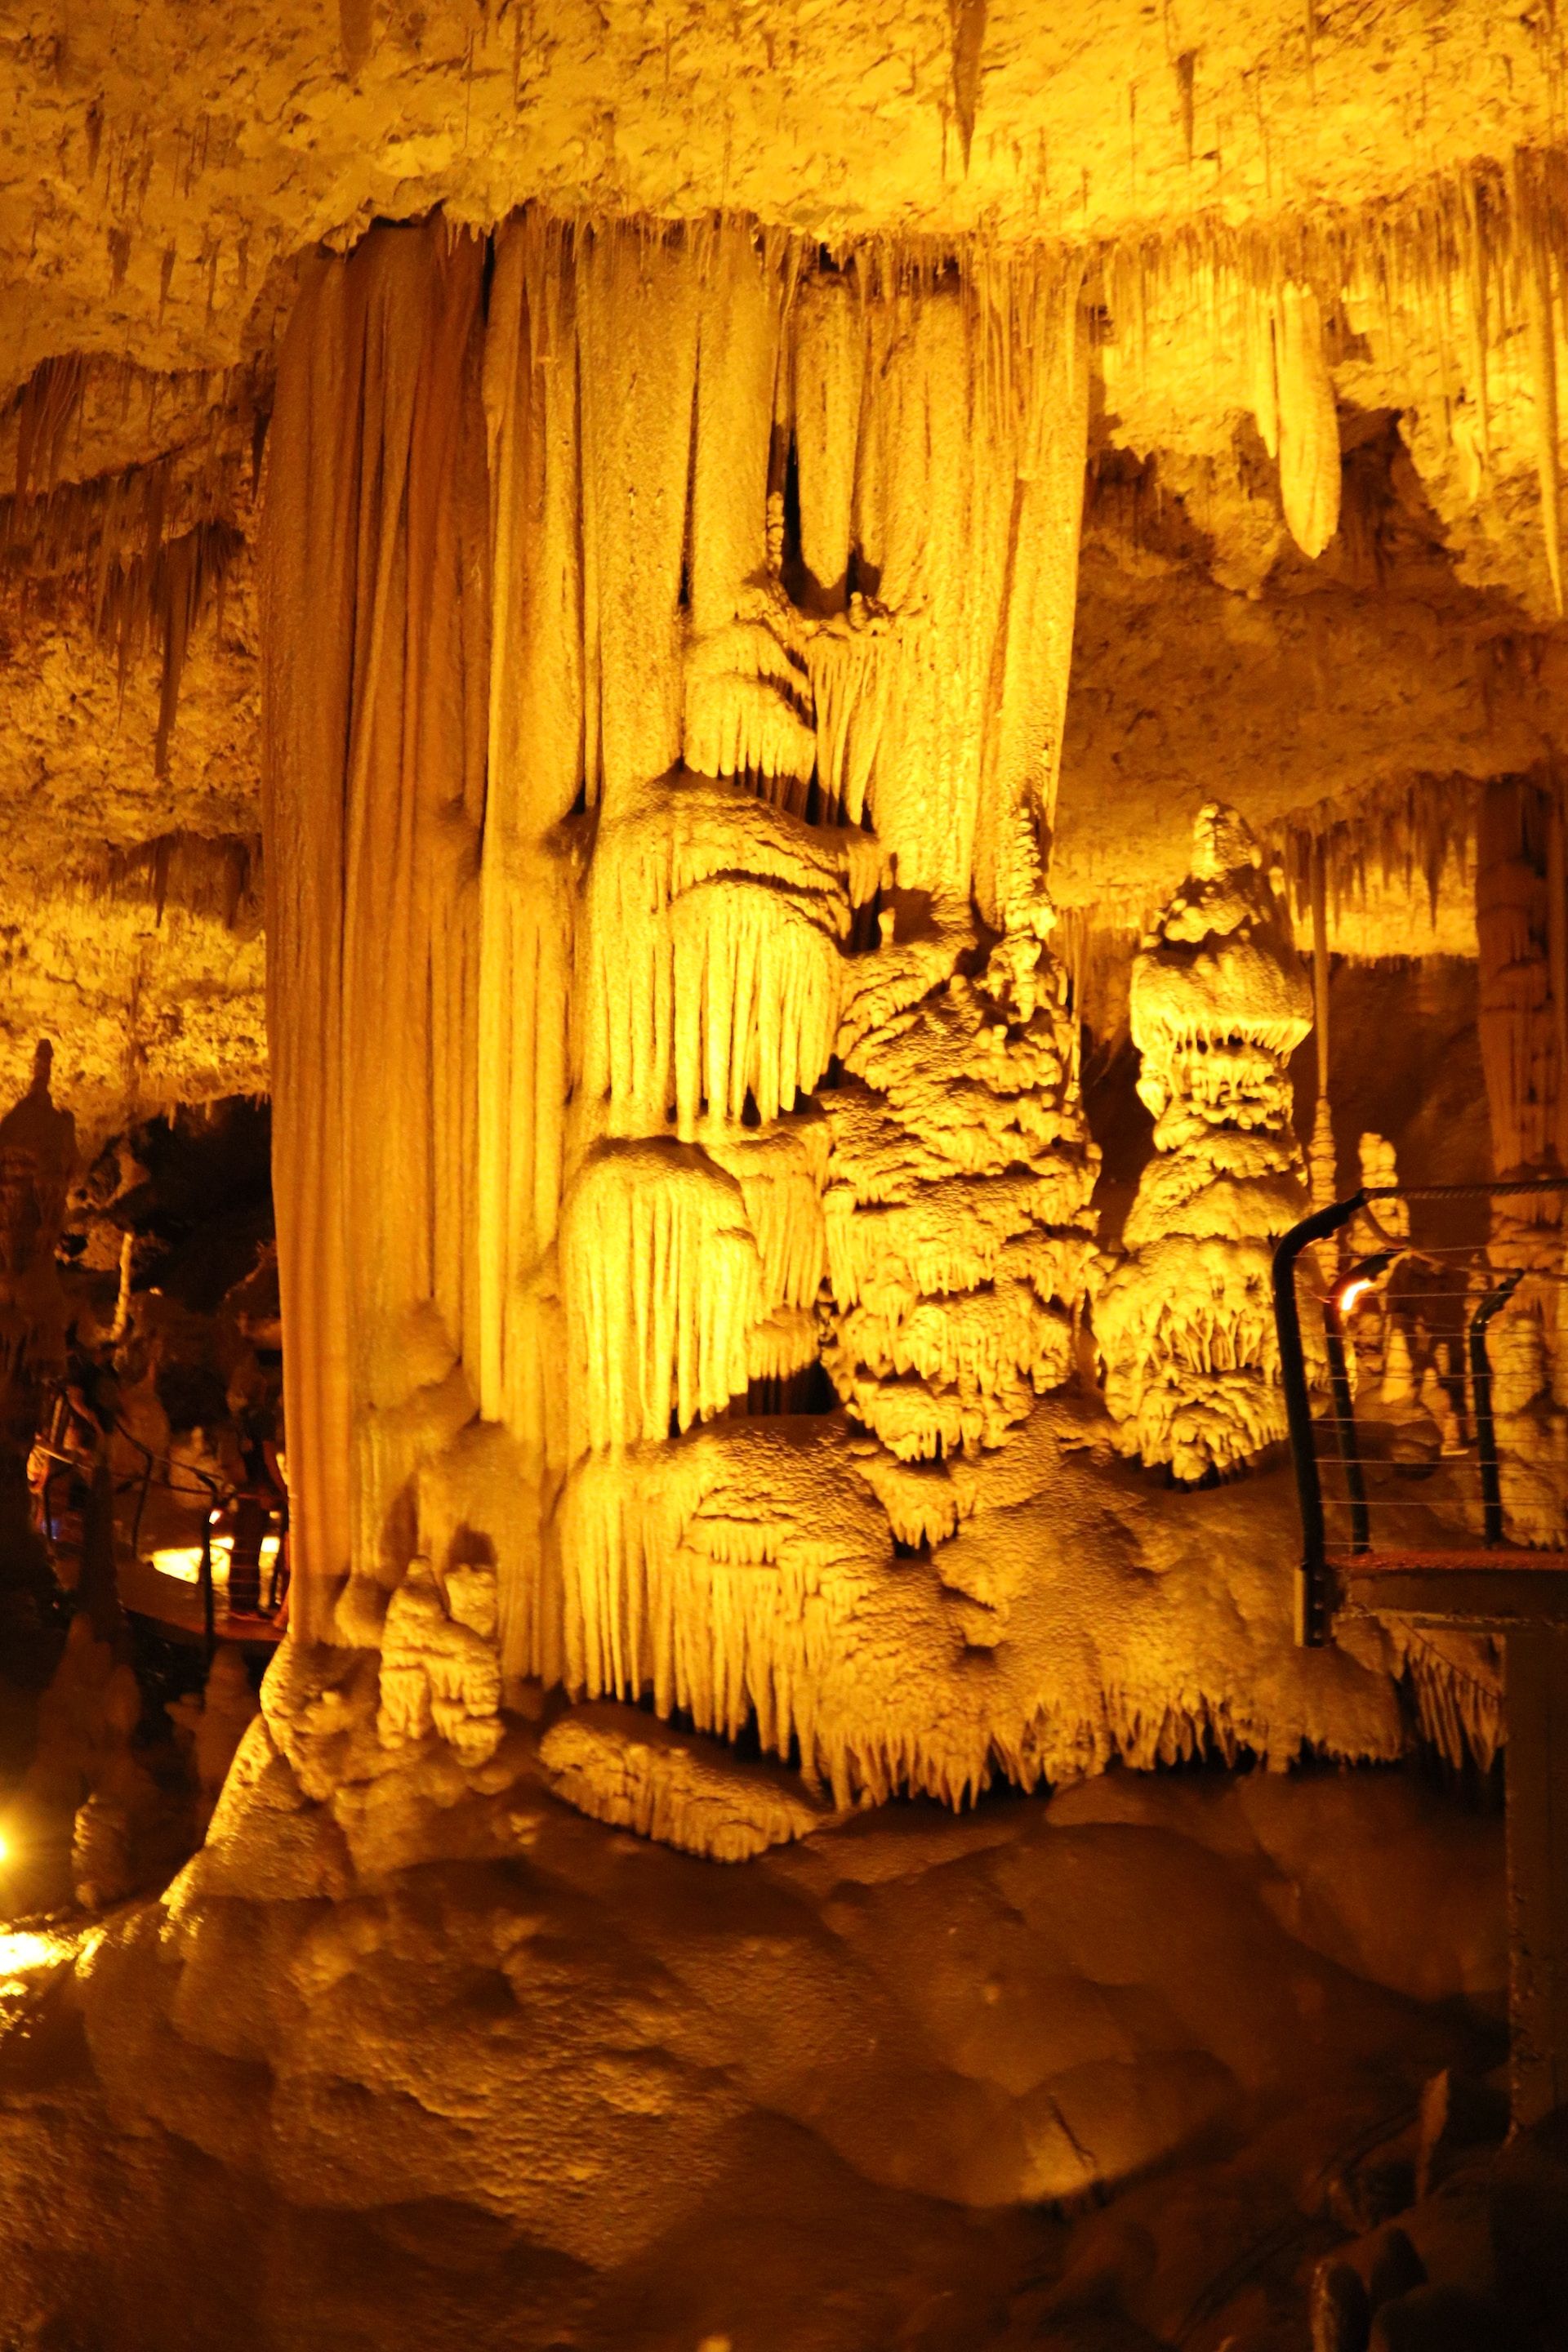 Mesmerizing underground stalactites